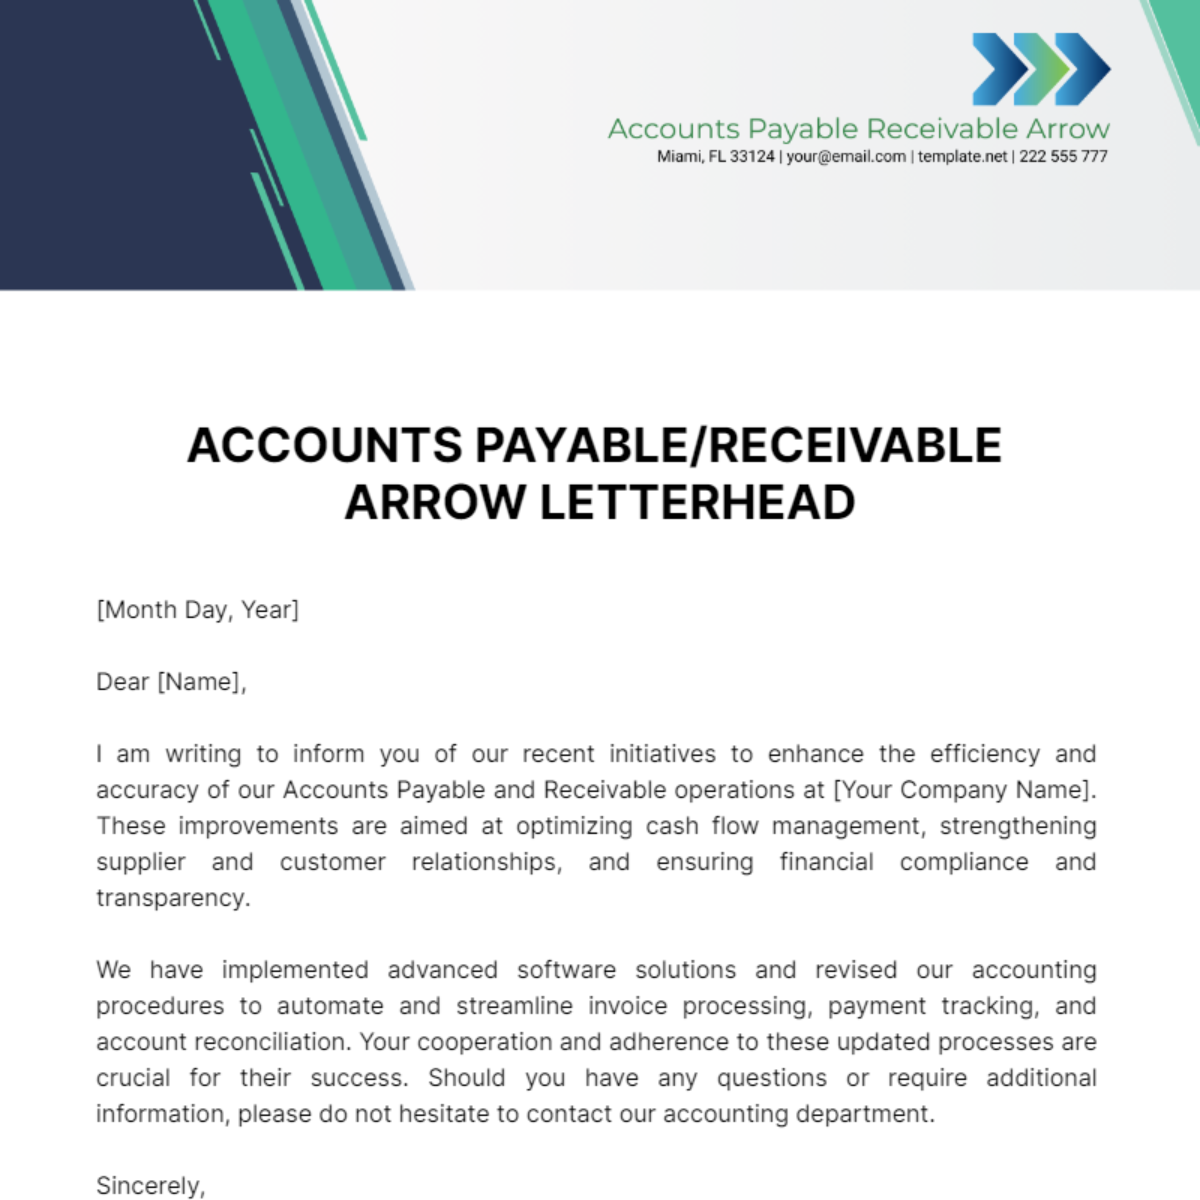 Free Accounts Payable/Receivable Arrow Letterhead Template